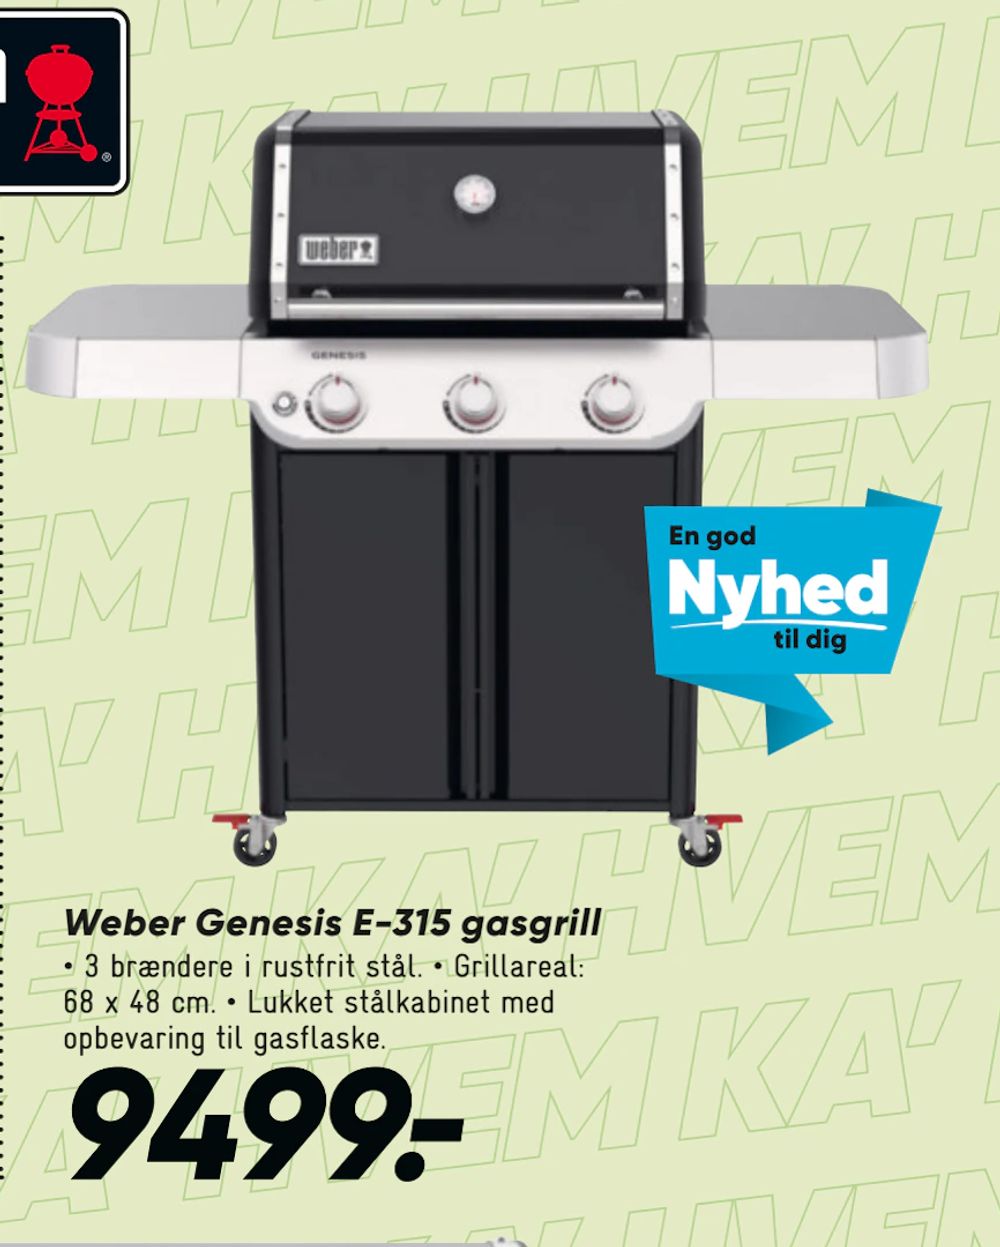 Tilbud på Weber Genesis E-315 gasgrill fra Bilka til 9.499 kr.